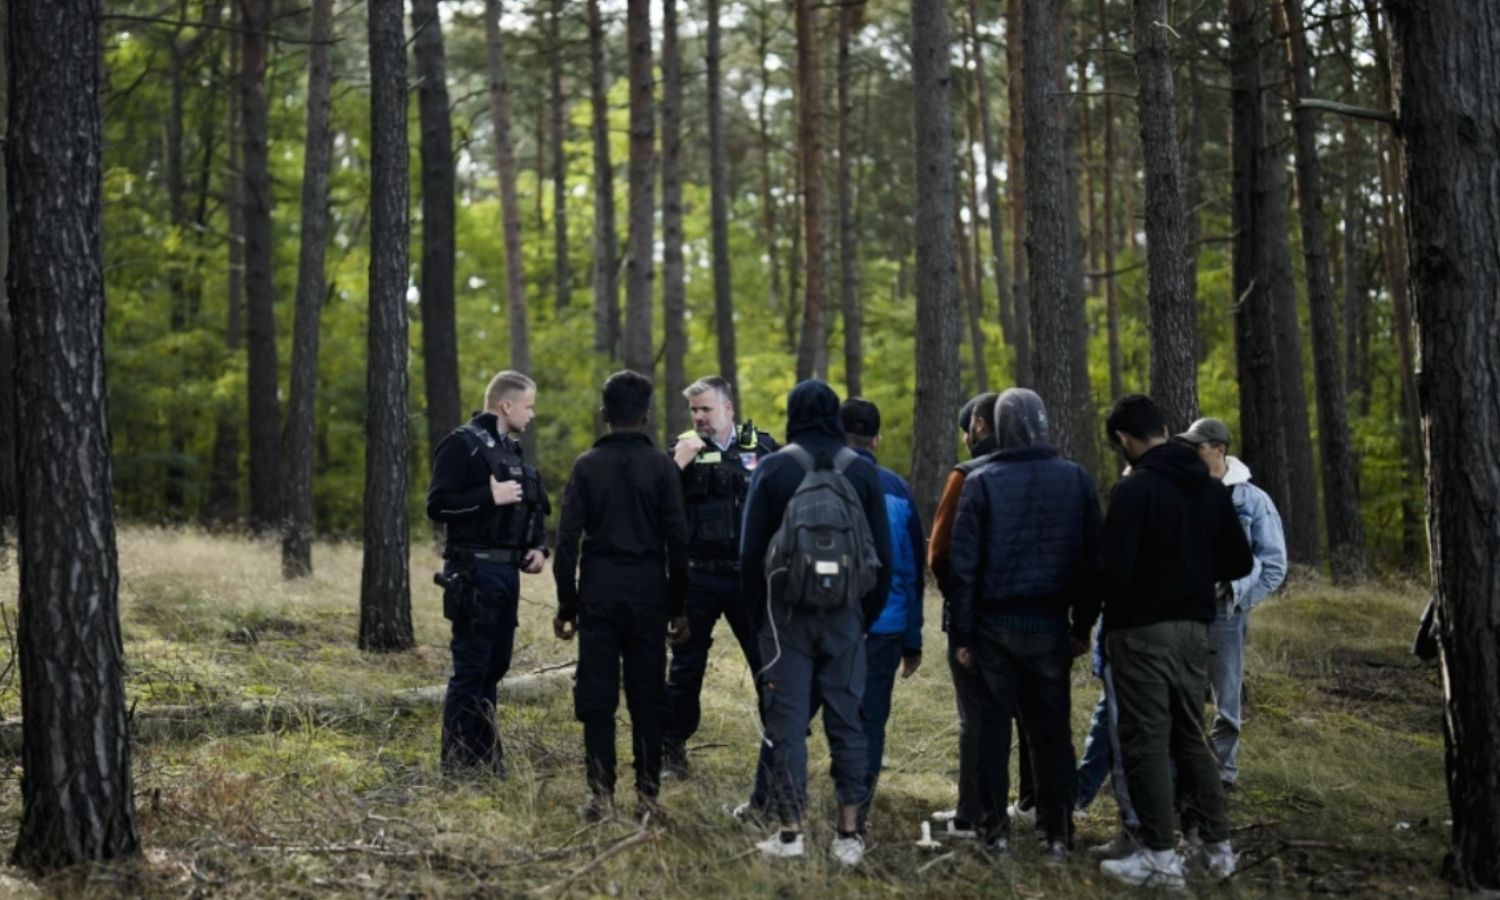 ضباط شرطة يتعقبون مجموعة من المهاجرين الذين عبروا الحدود بشكل "غير قانوني" من بولندا إلى ألمانيا_11 من كانون الأول 2023(AP)